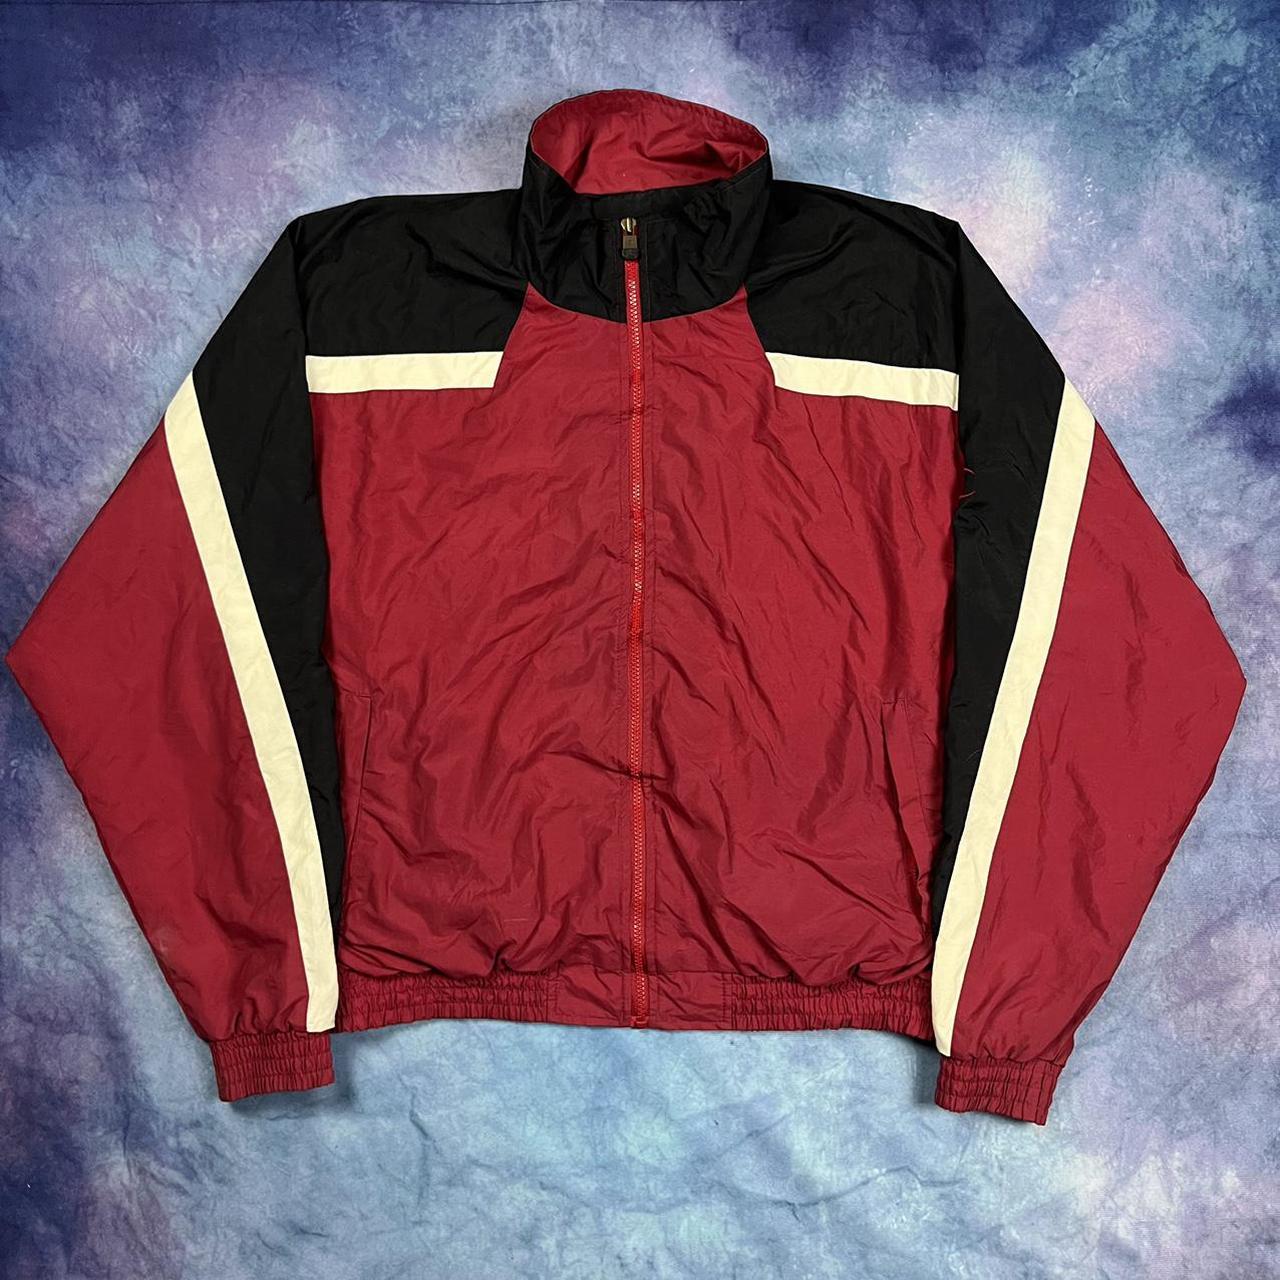 Vintage champion windbreaker jacket mens large red... - Depop